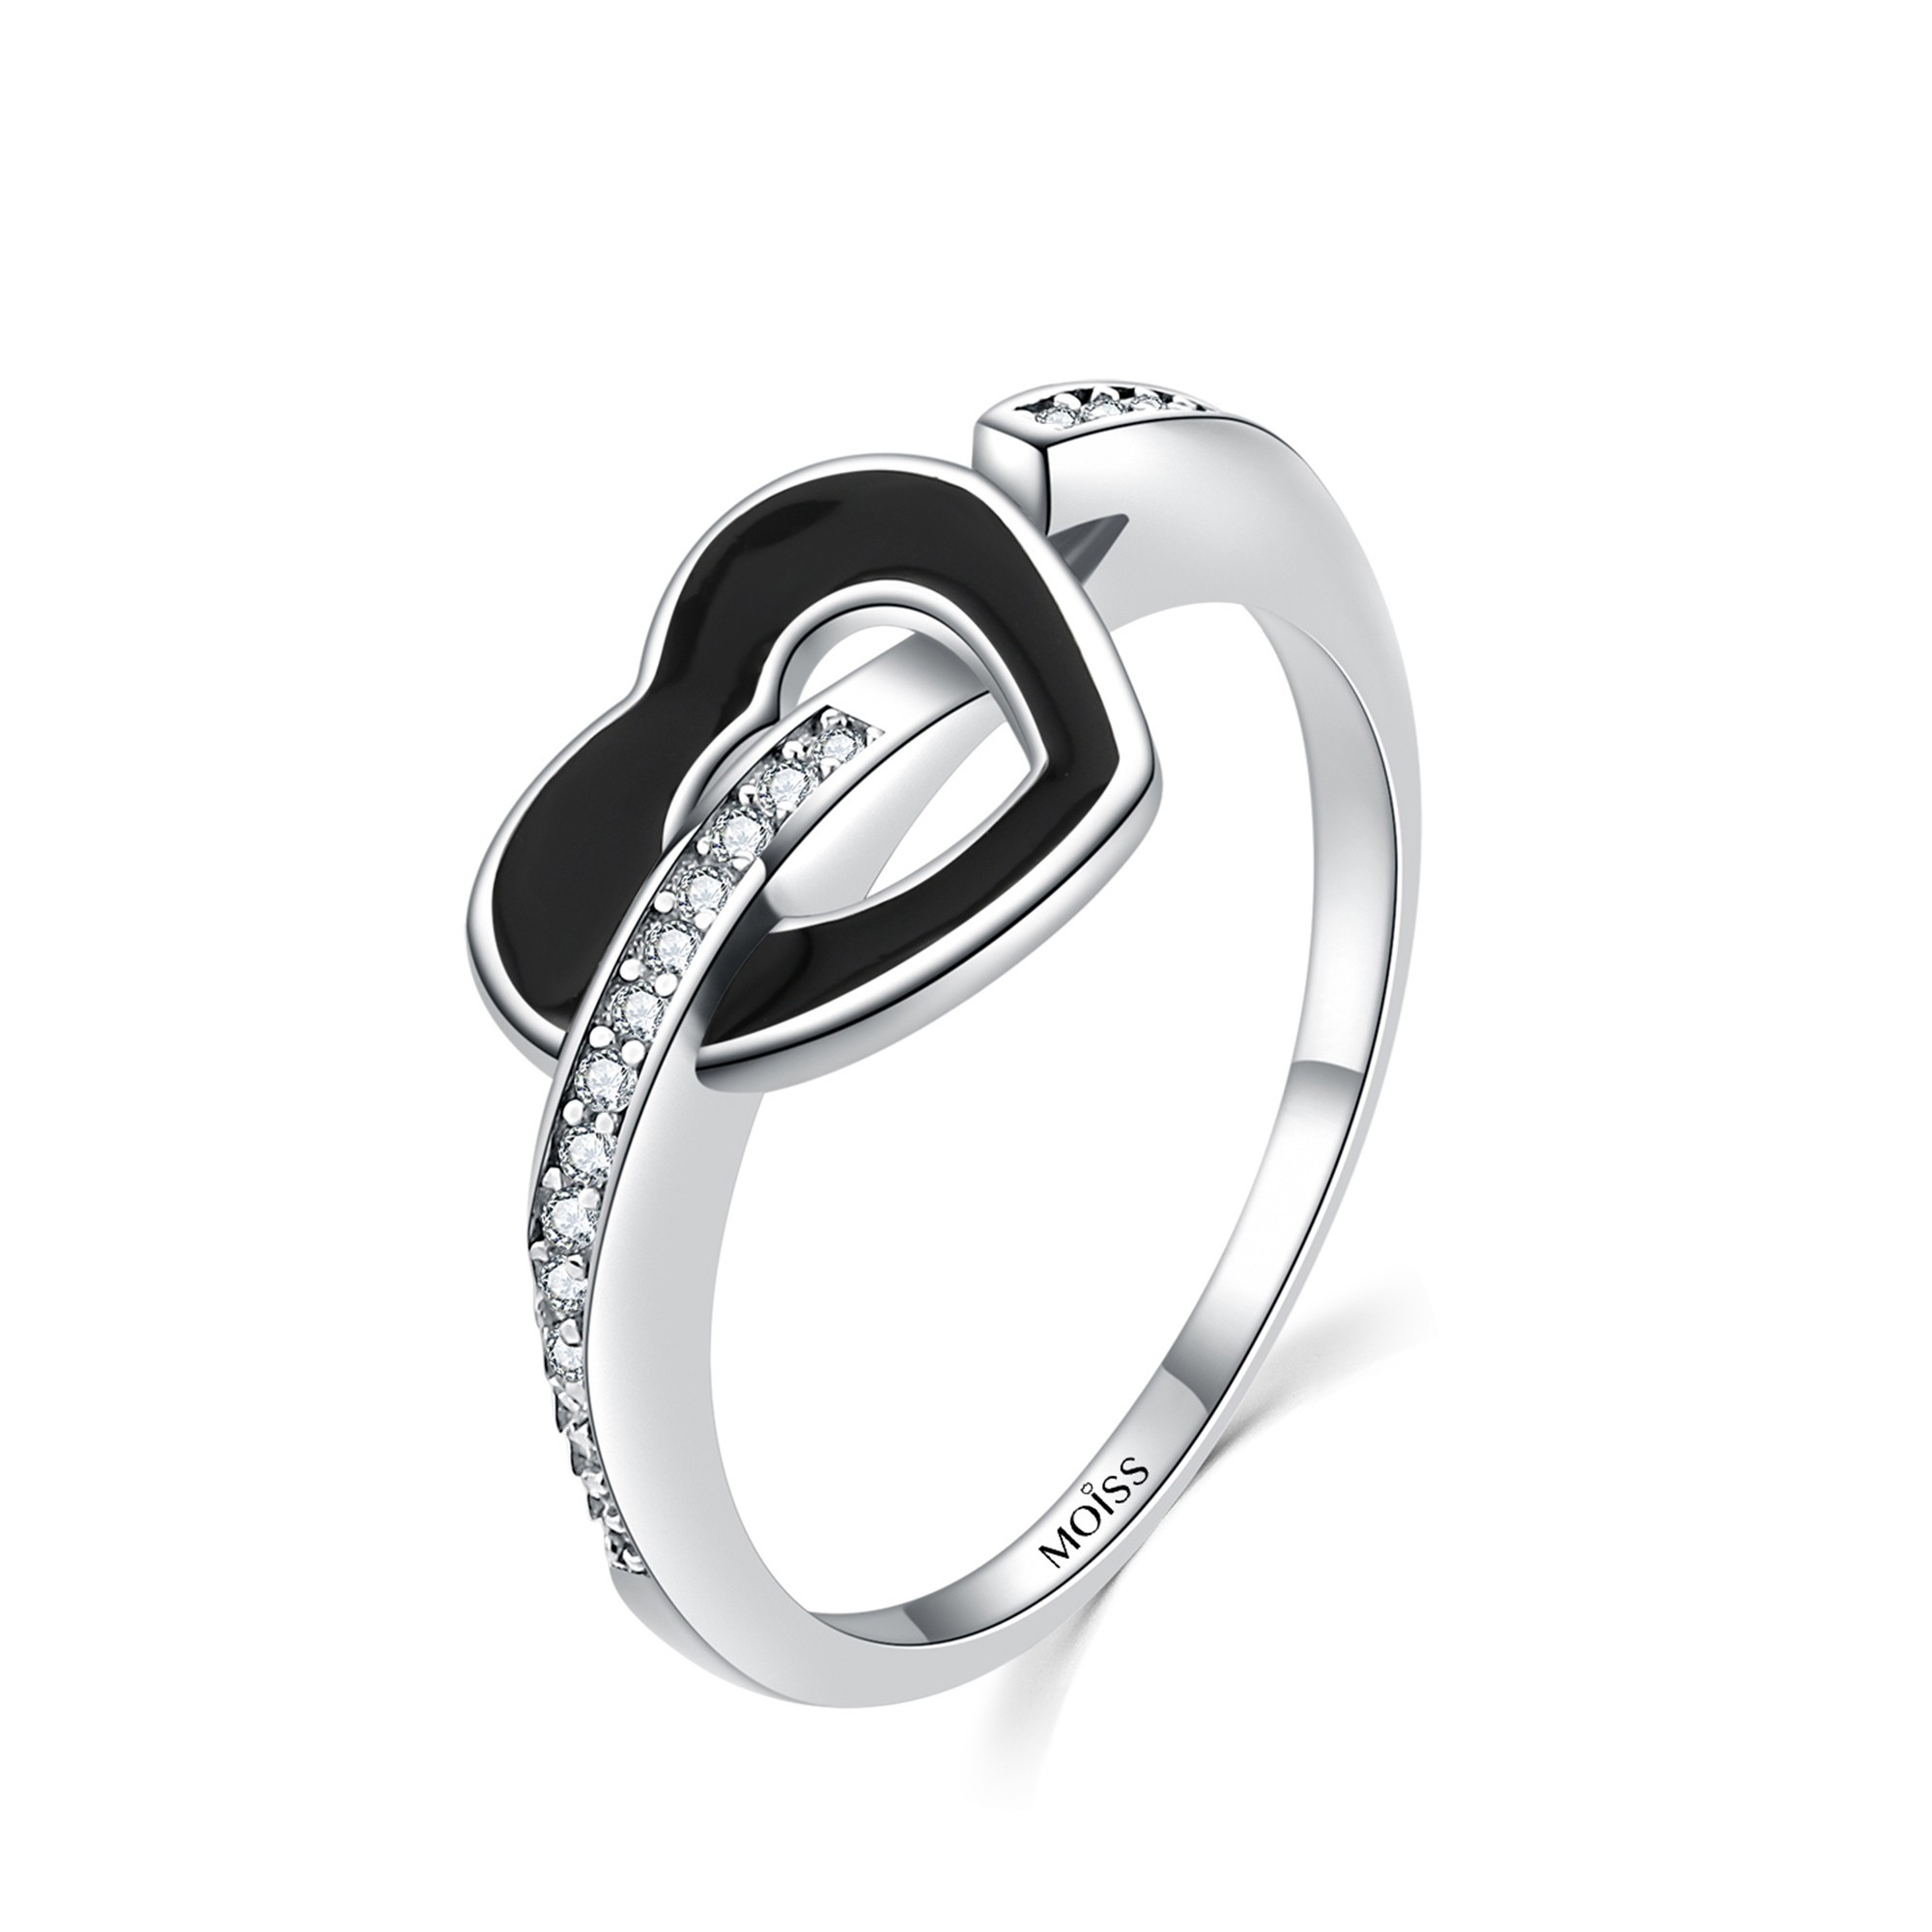 MOISS Moiss stříbrný prsten ČERNÉ SRDCE R0002060 Velikost 50 mm R0002060